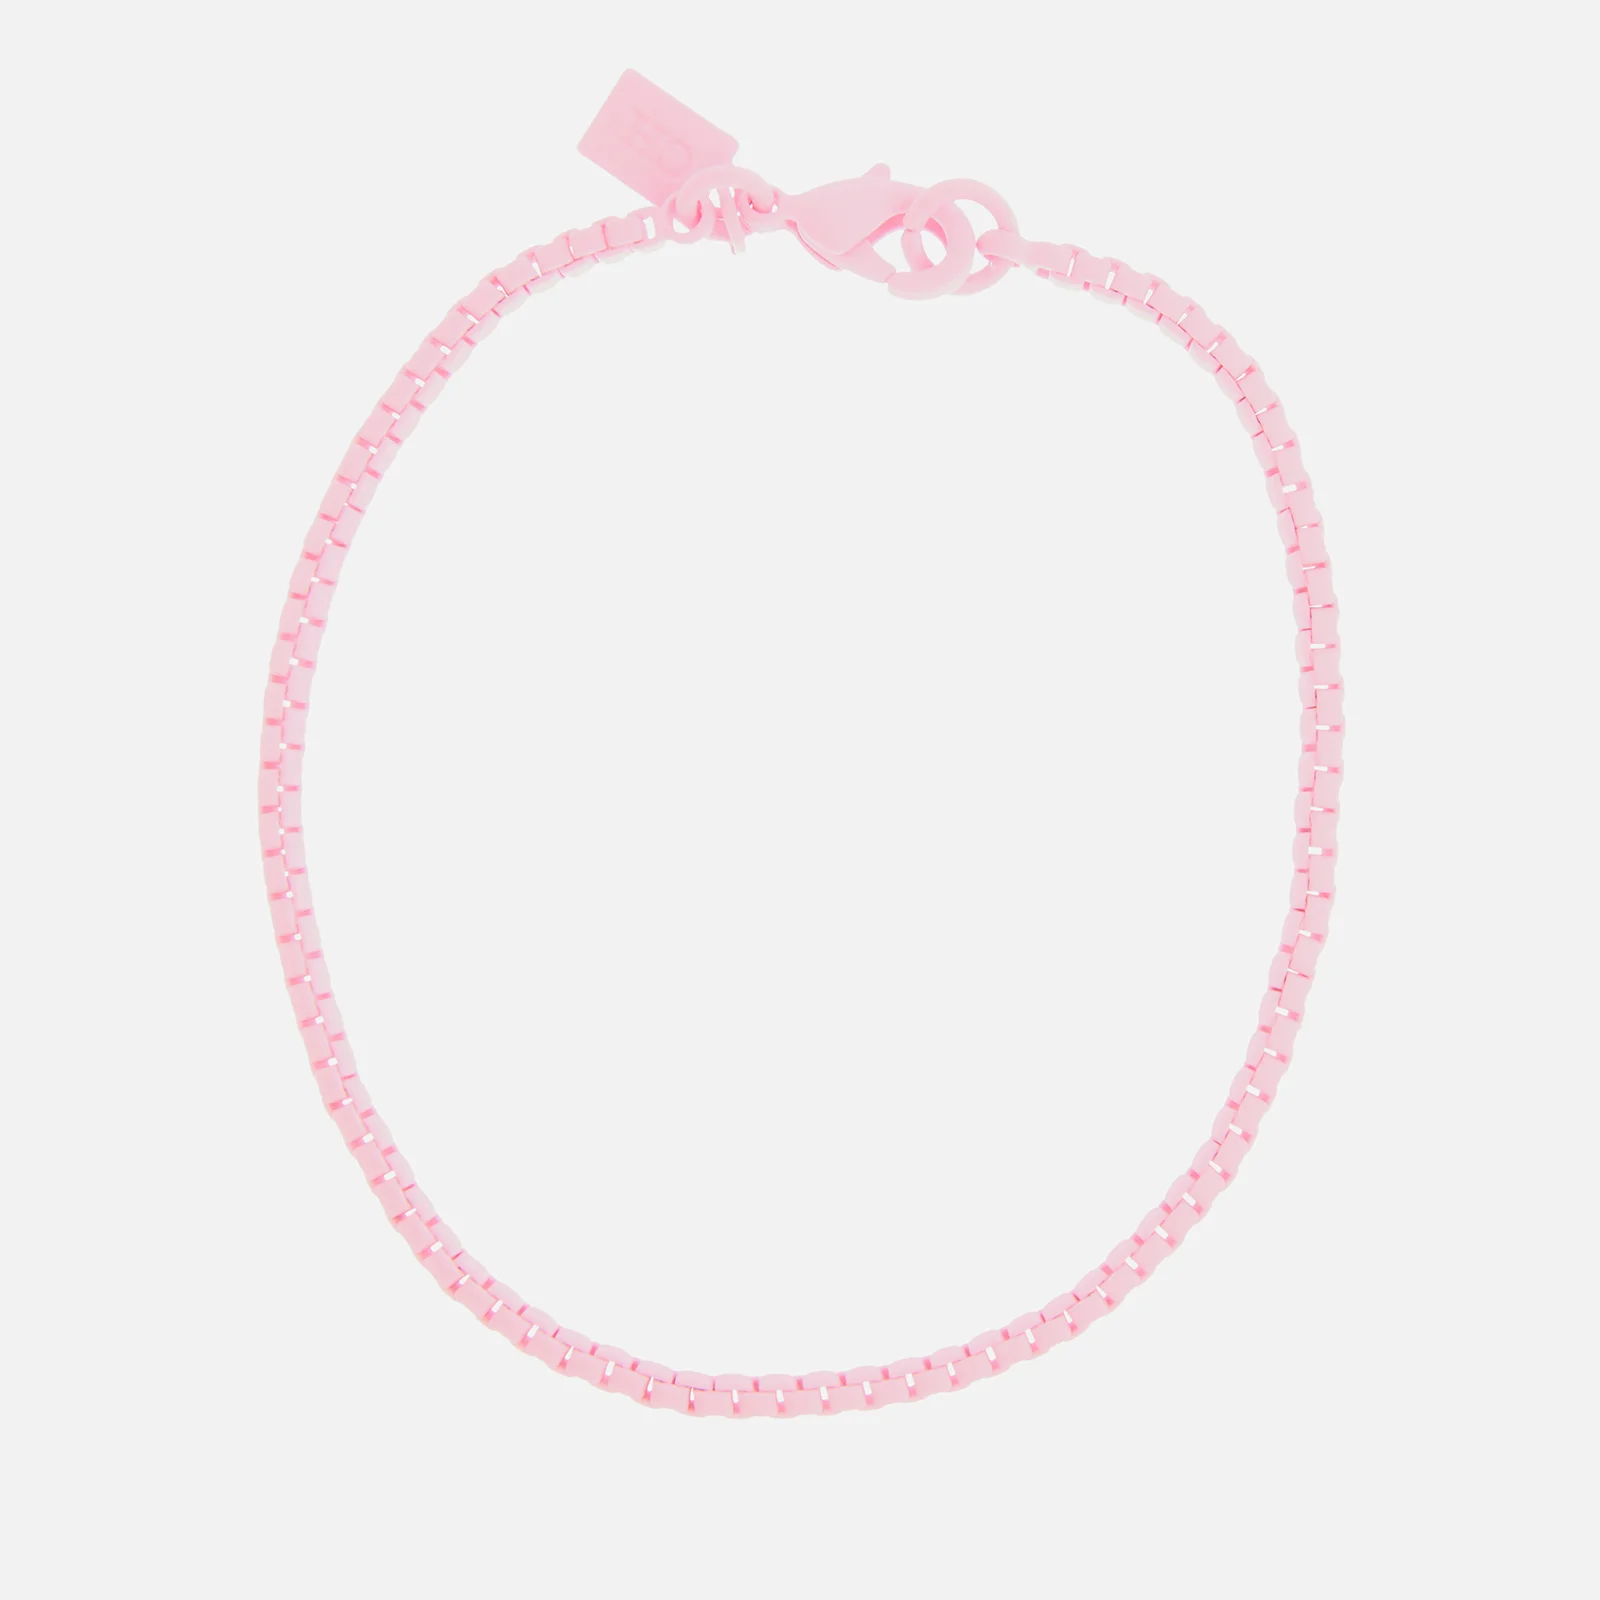 Crystal Haze Women's Plastalina Bracelet - Candy Pink Image 1